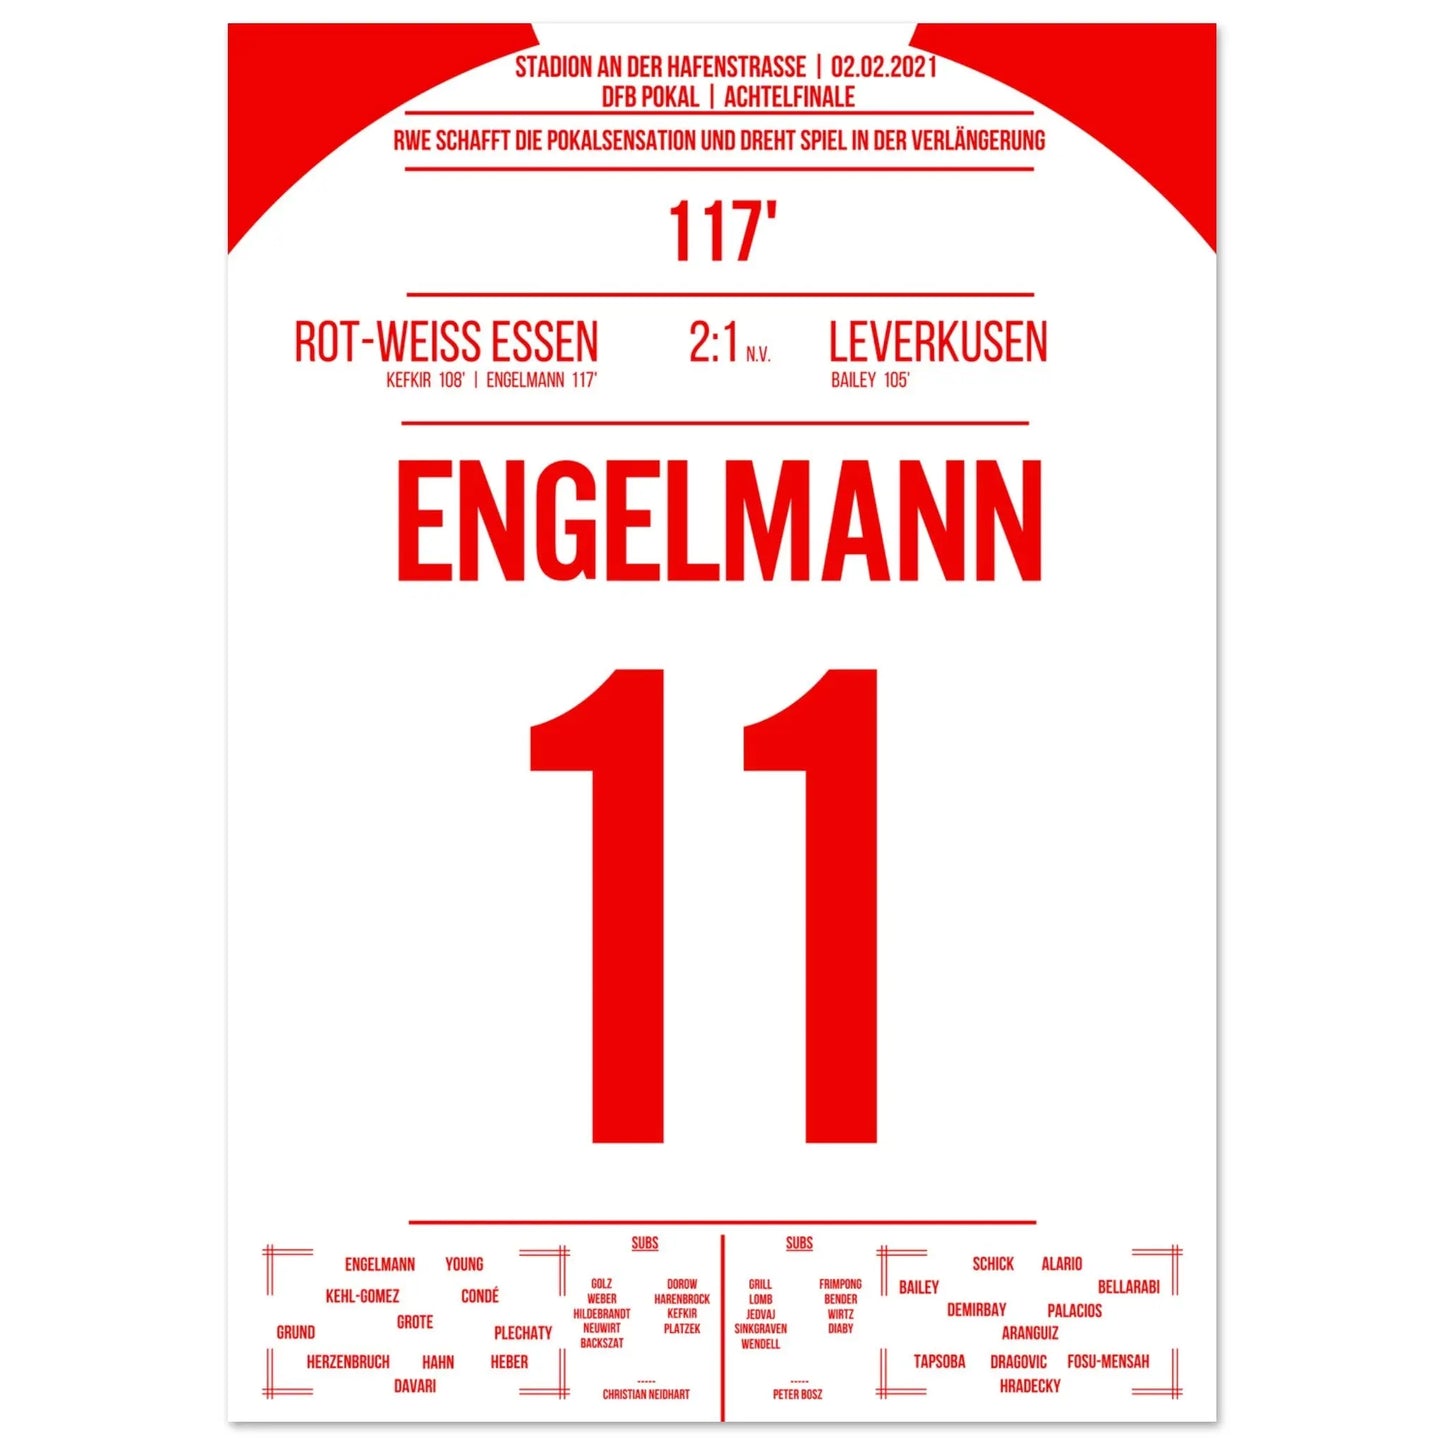 Essen's cup sensation against Leverkusen in 2021